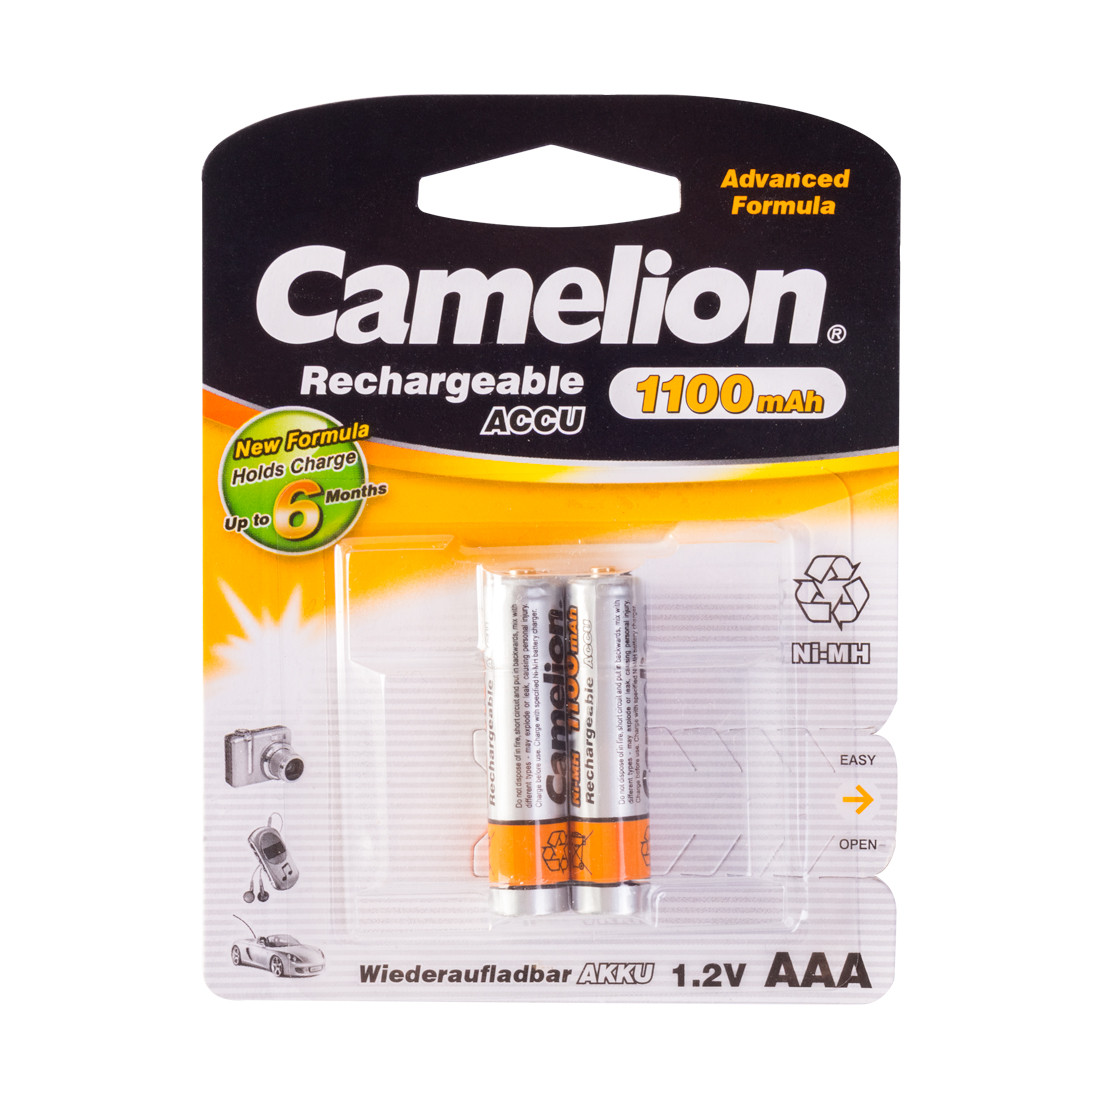 CAMELION NH-AAА1100BP2 Аккумуляторная батарея Rechargeable, AAA, 1.2V, 1100 mAh, 2 шт. в блистере